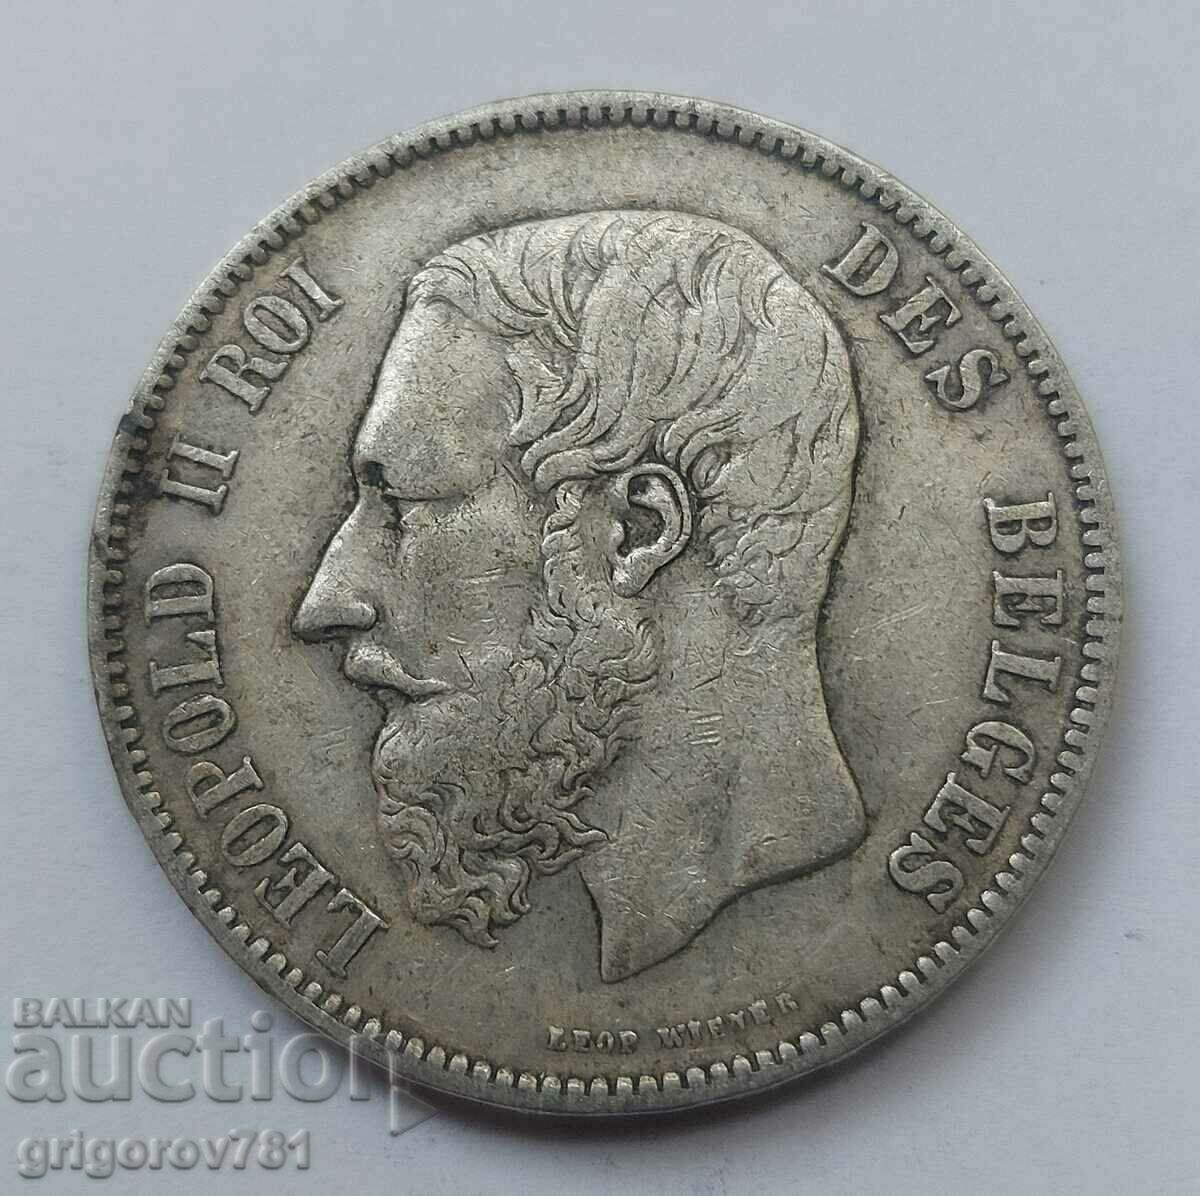 Ασημένιο 5 Φράγκα Βέλγιο 1873 Ασημένιο νόμισμα #175